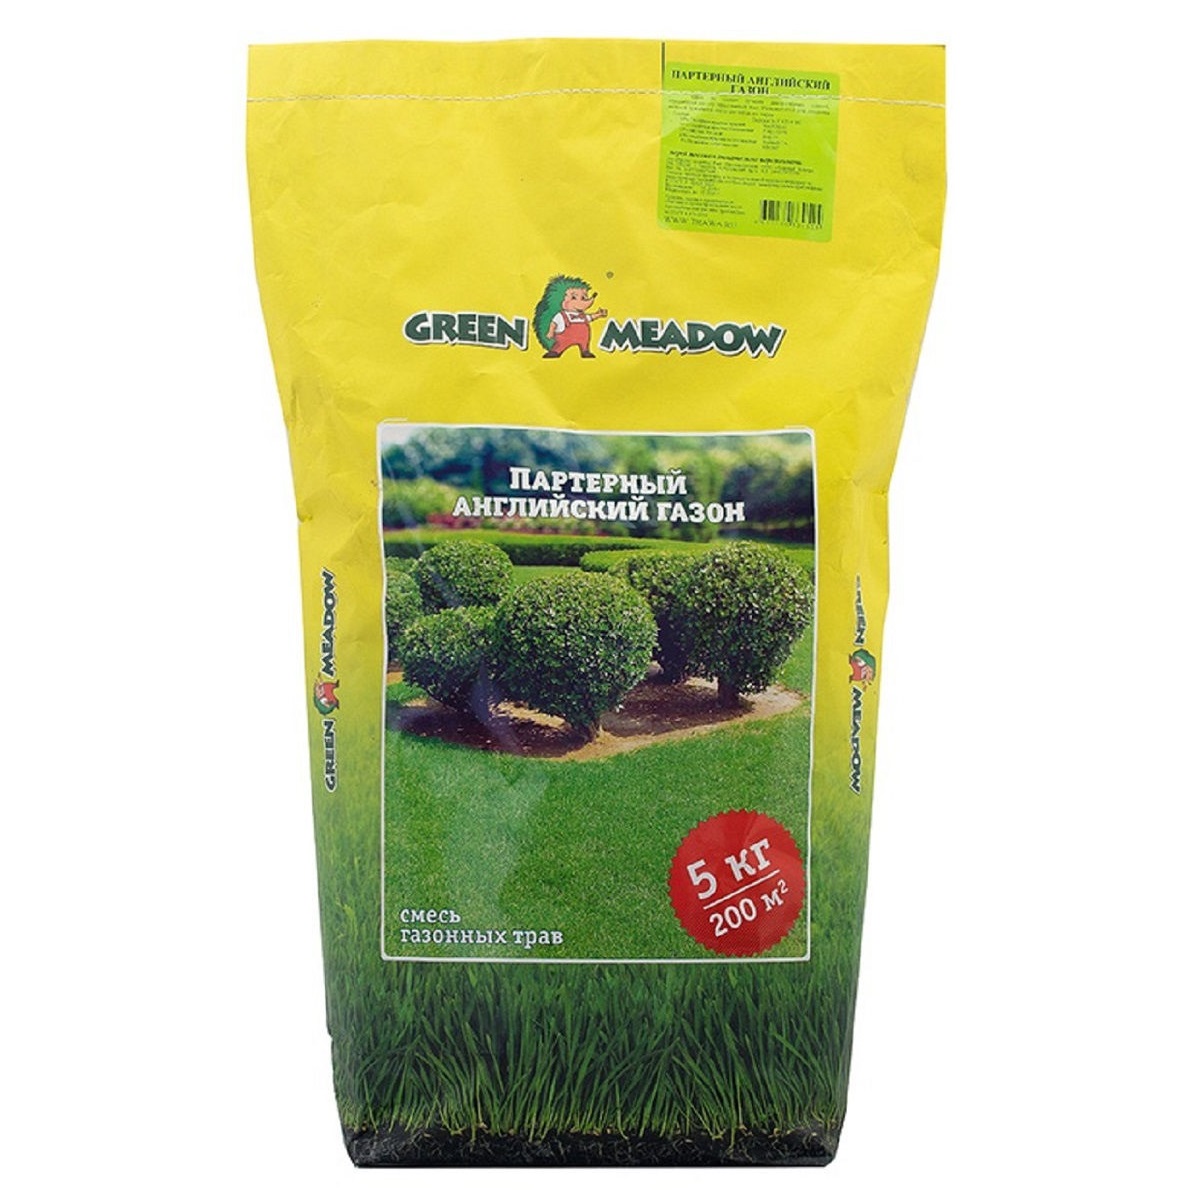 Газон Green Meadow партерный английский 5 кг газон green meadow лилипут для ленивых 8 кг